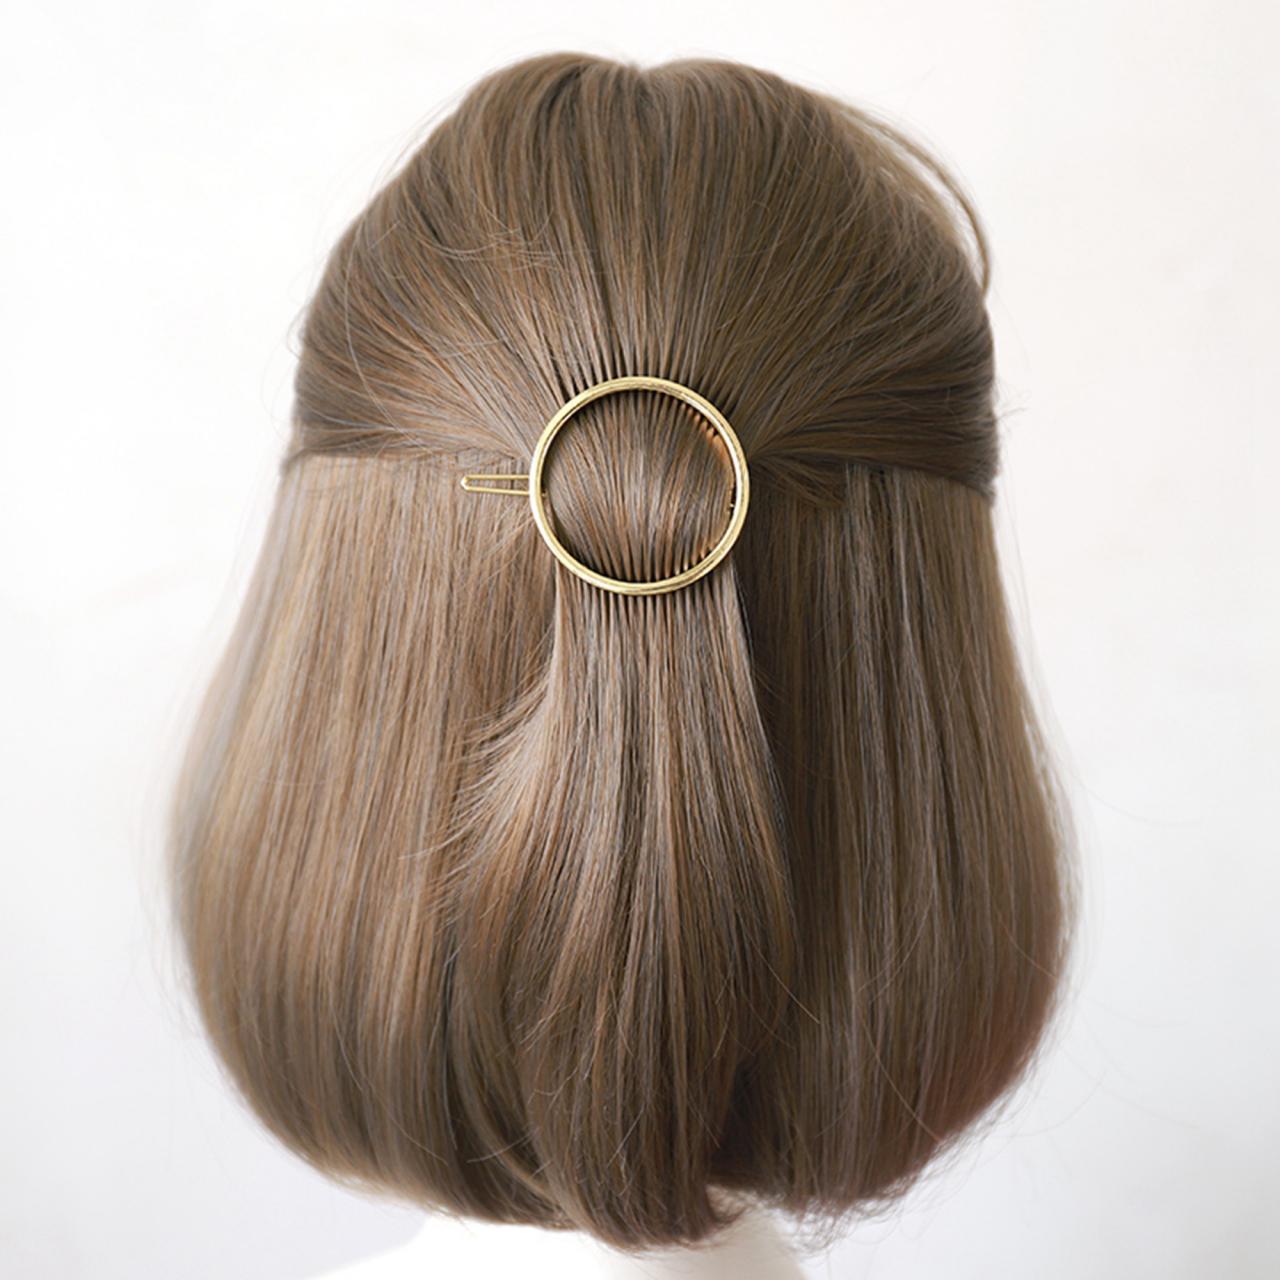 Gold Plated Round Hair Clip, Minimalist Hair Accessories, Geometric Hair Clip, Minimal French Barrette, Metal Alloy Hair Clip, Hair Barrette